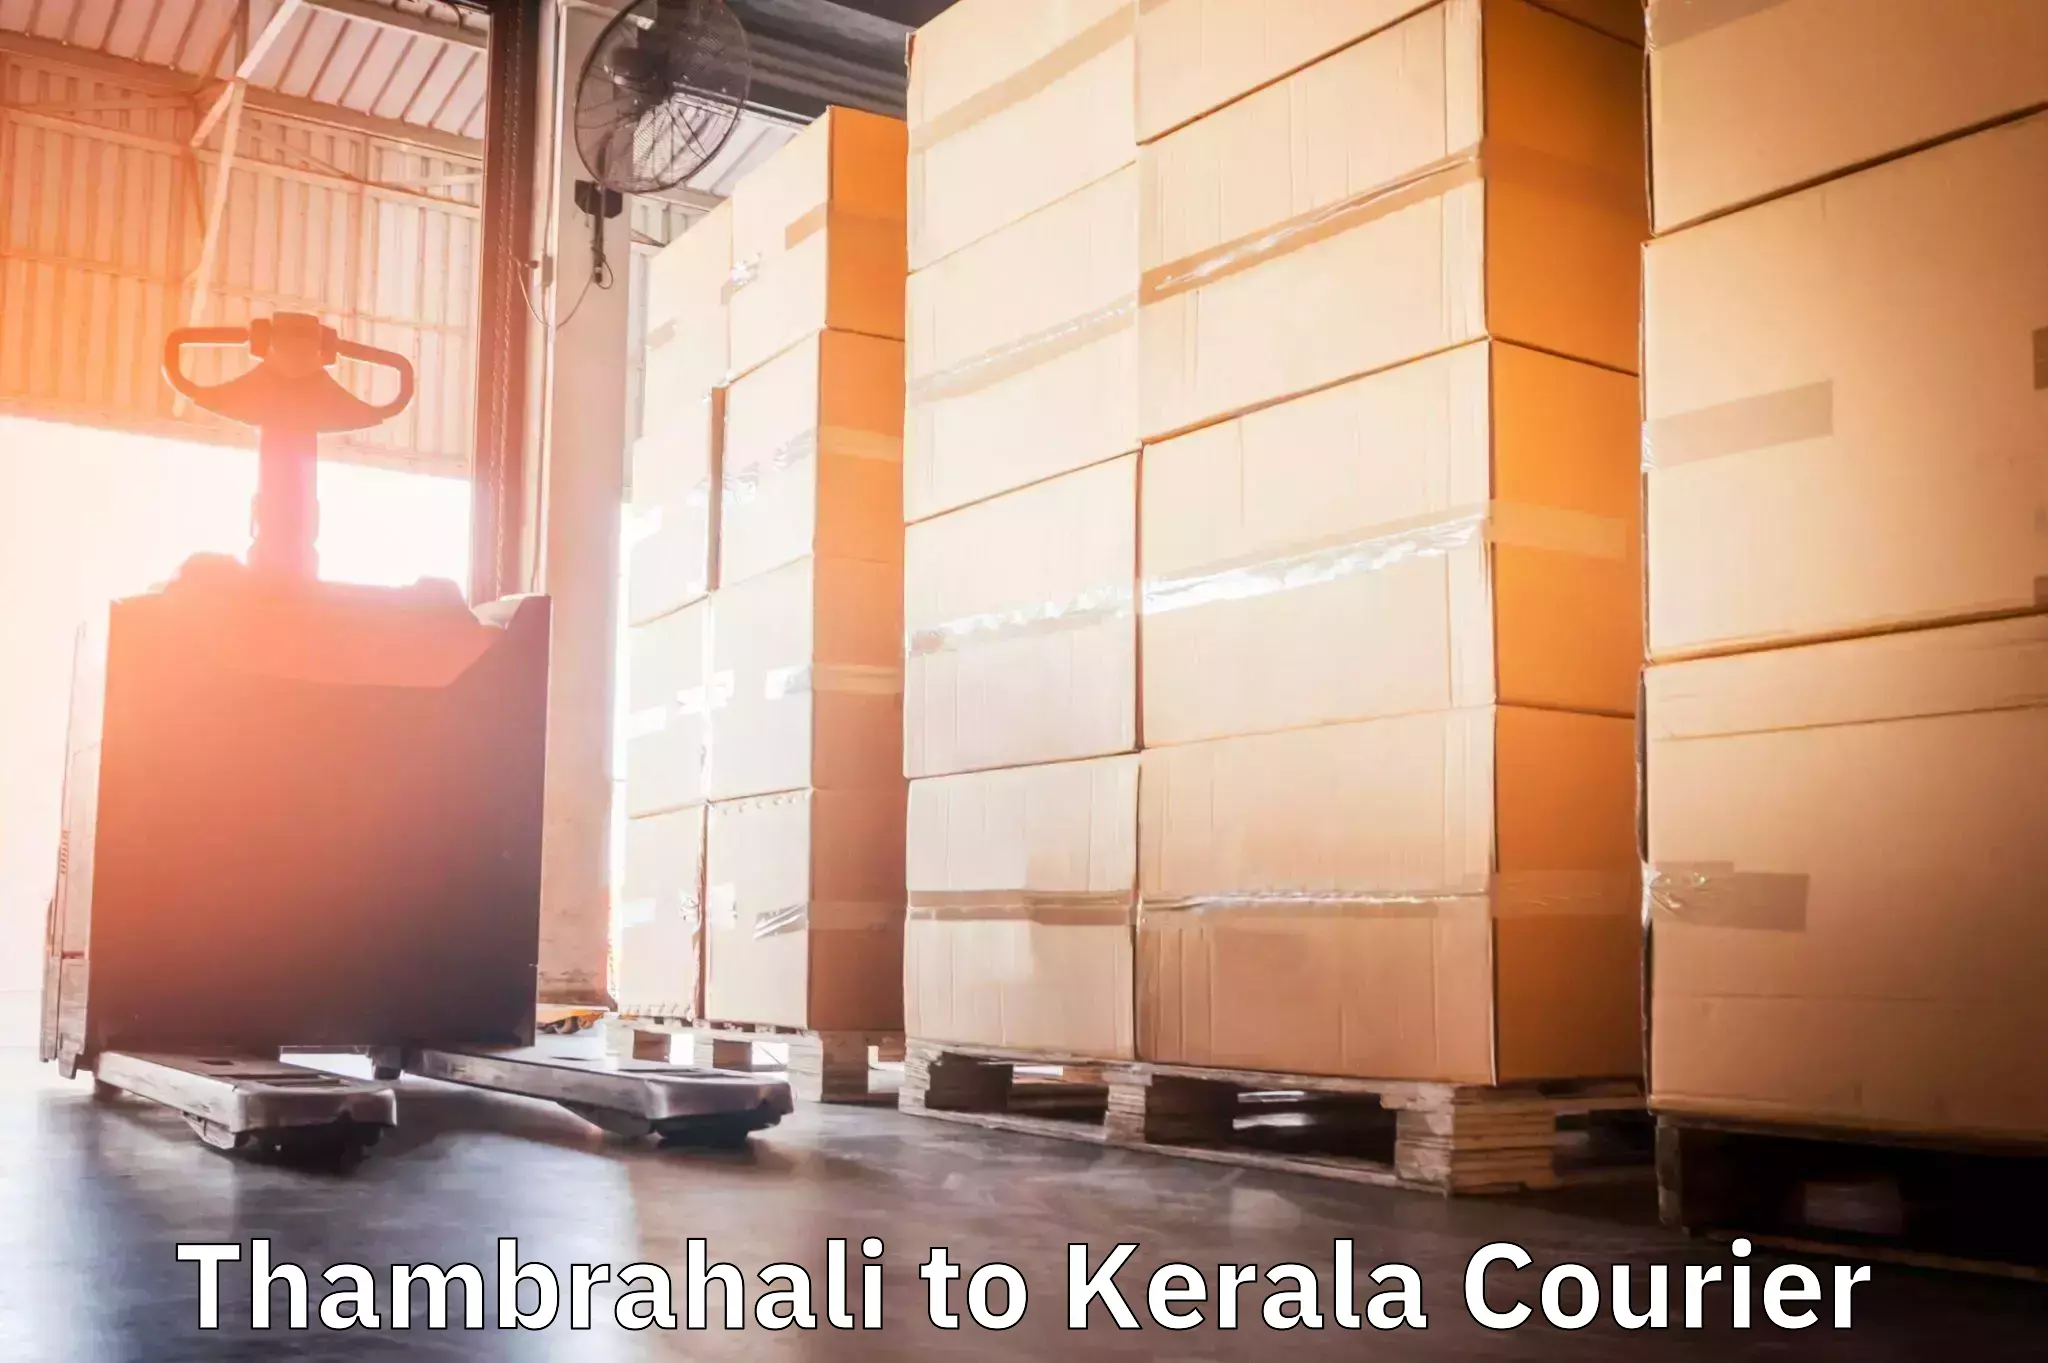 Multi-modal transportation Thambrahali to Kerala